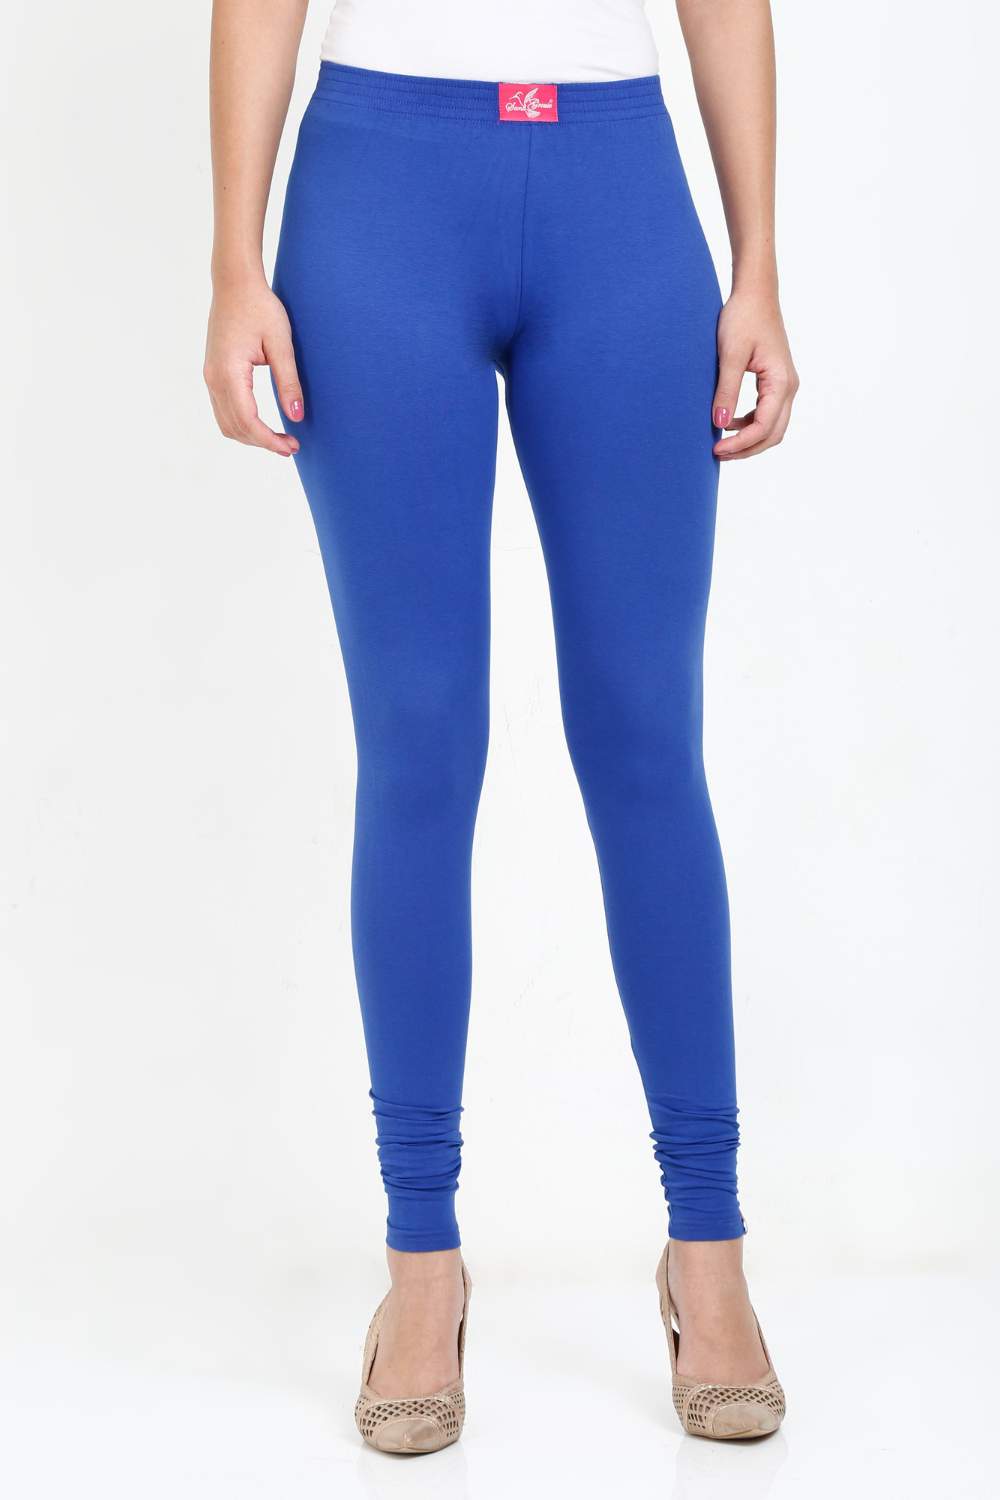 Women's Cotton Lycra Royal Blue Full length legging